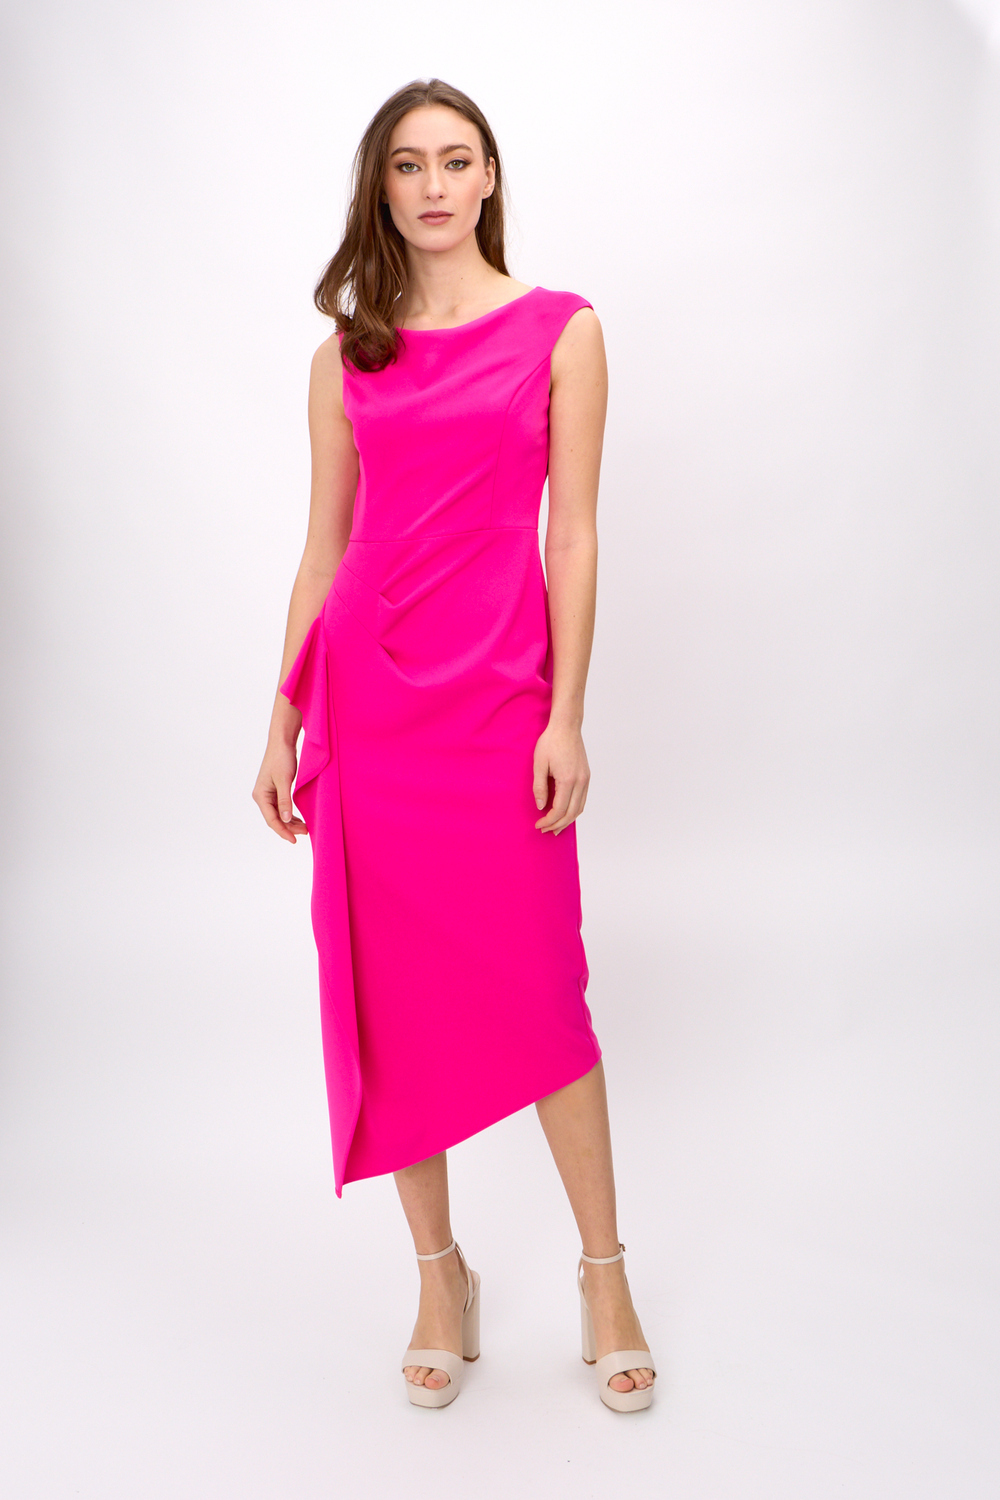 Ruffle Sheath Dress Style 242238. Ultra Pink